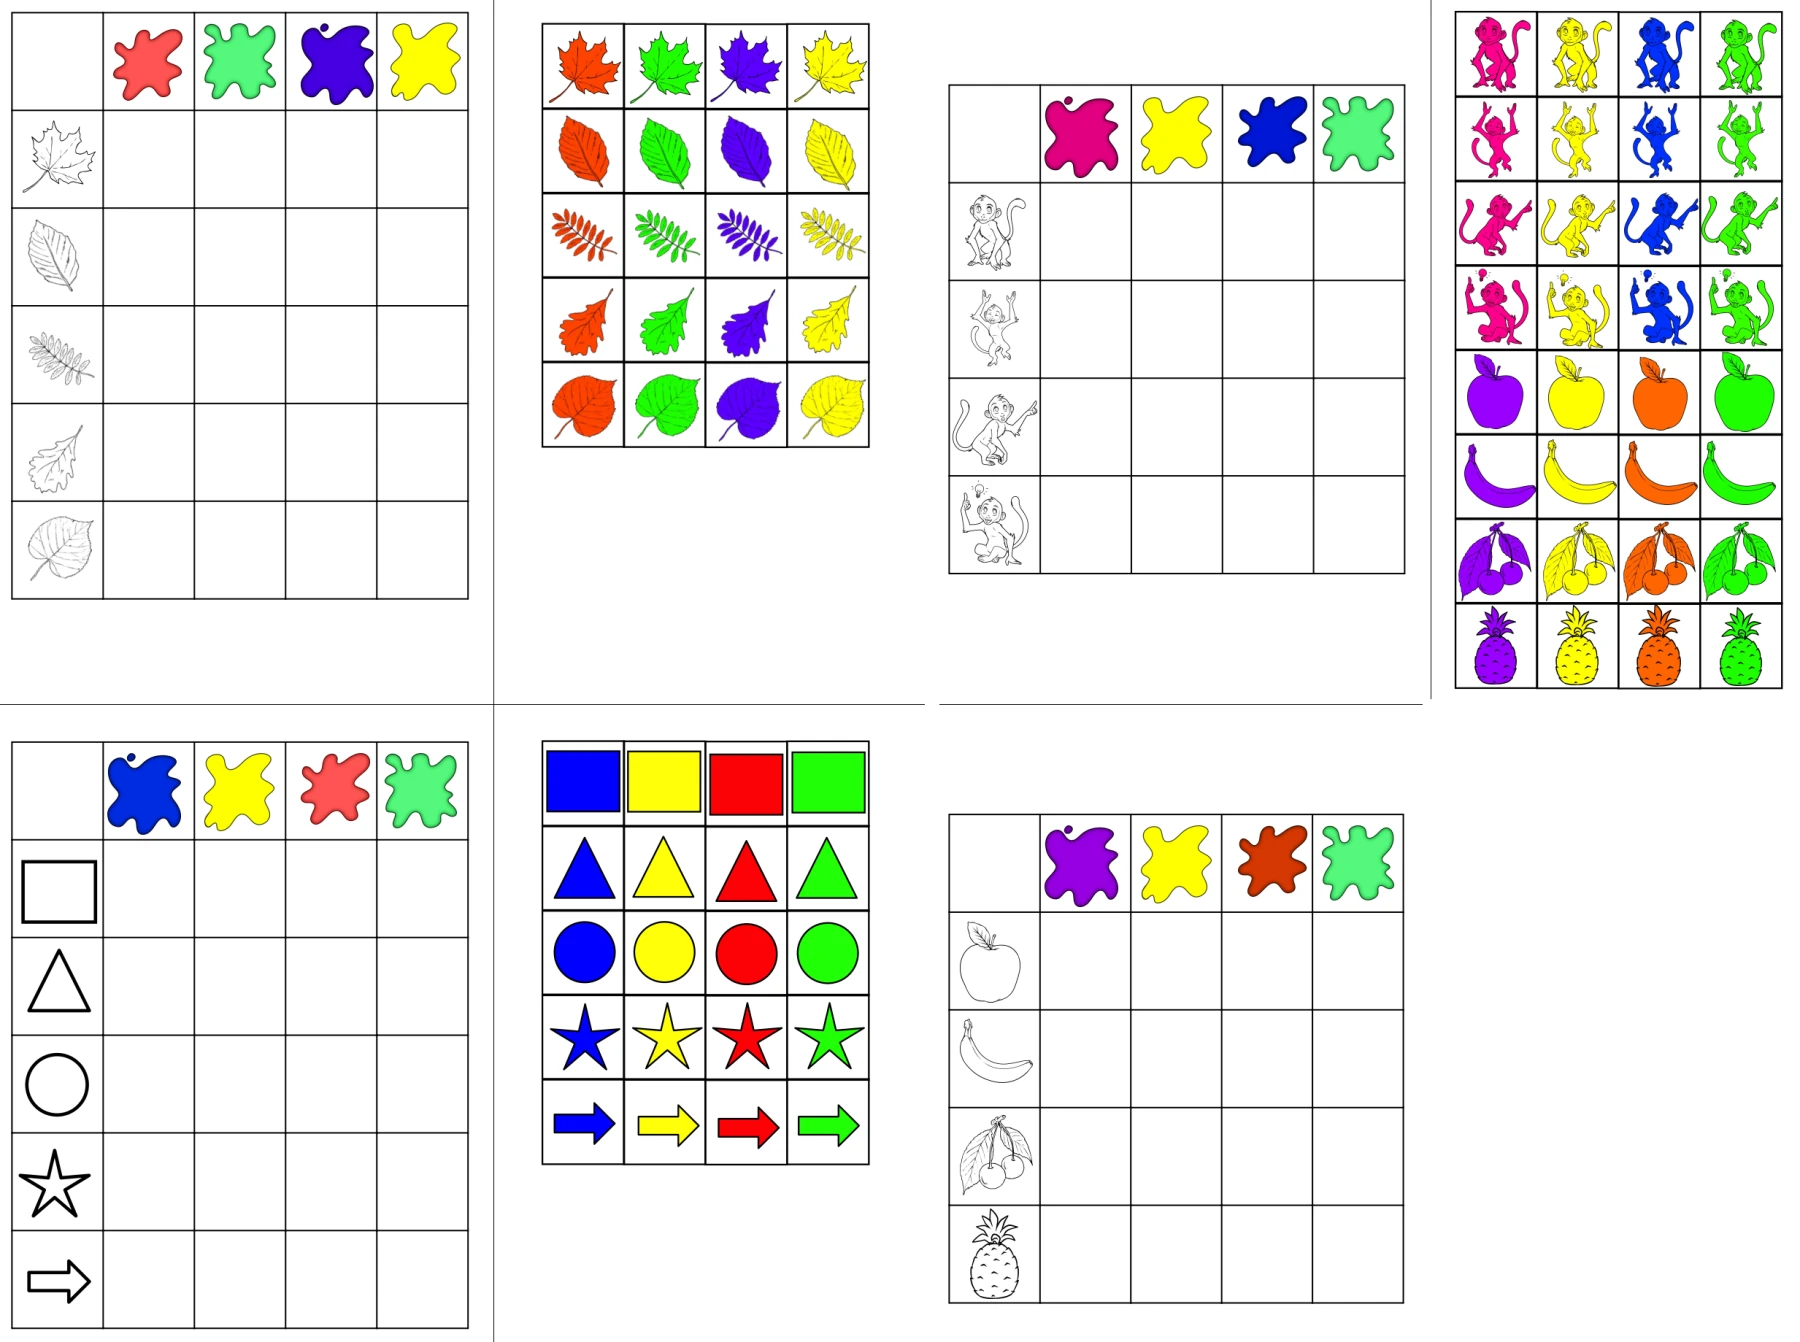 farben und formen zuordnen • Aufgabenmappe - Farben und Formen